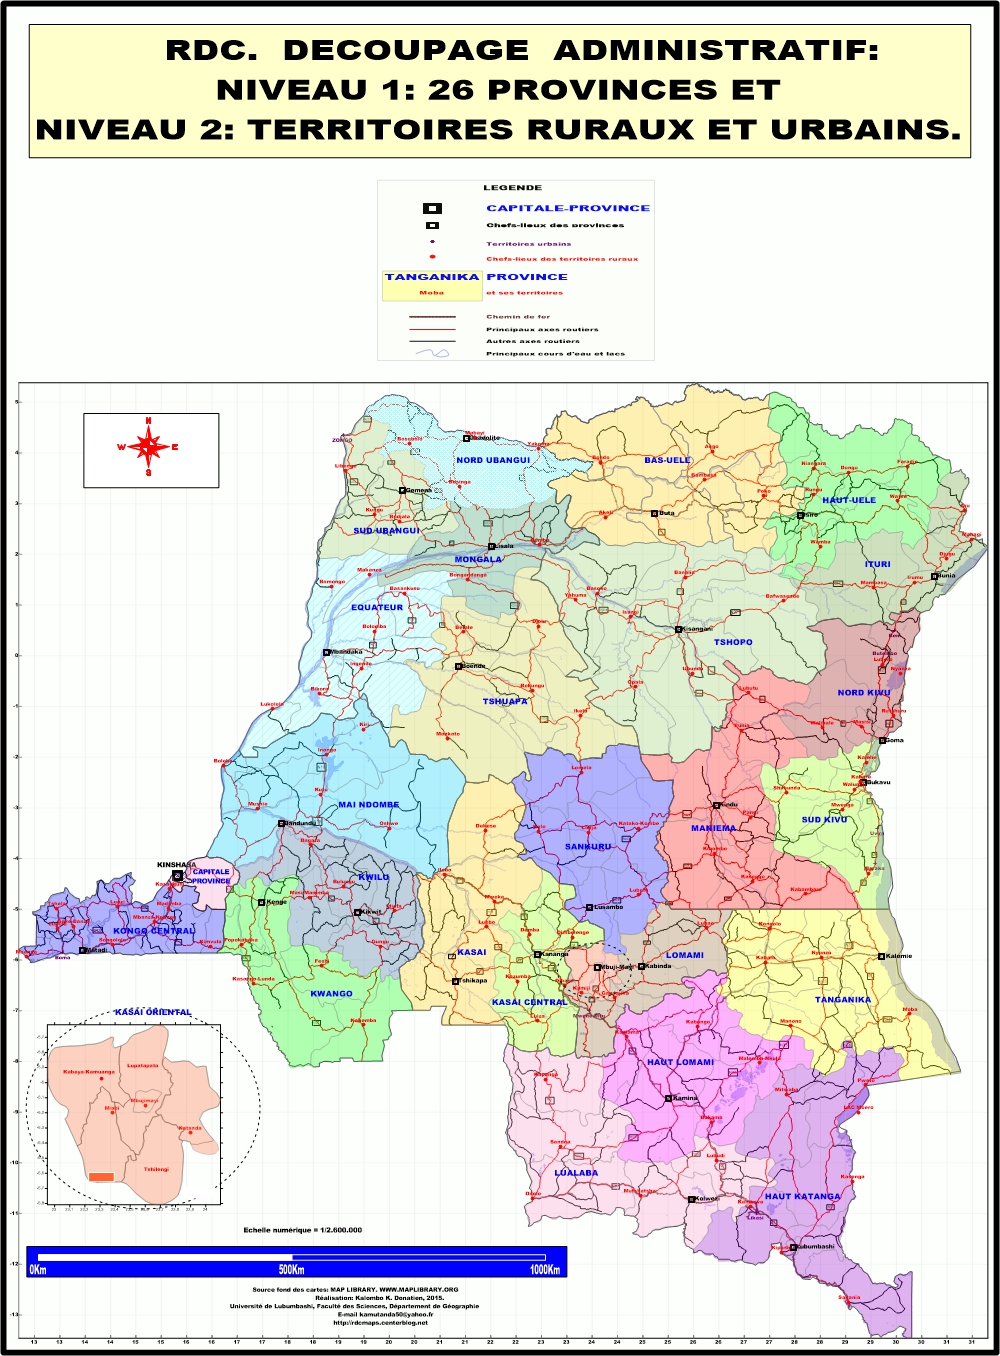 RDC: DECOUPAGE EN 26 PROVINCES